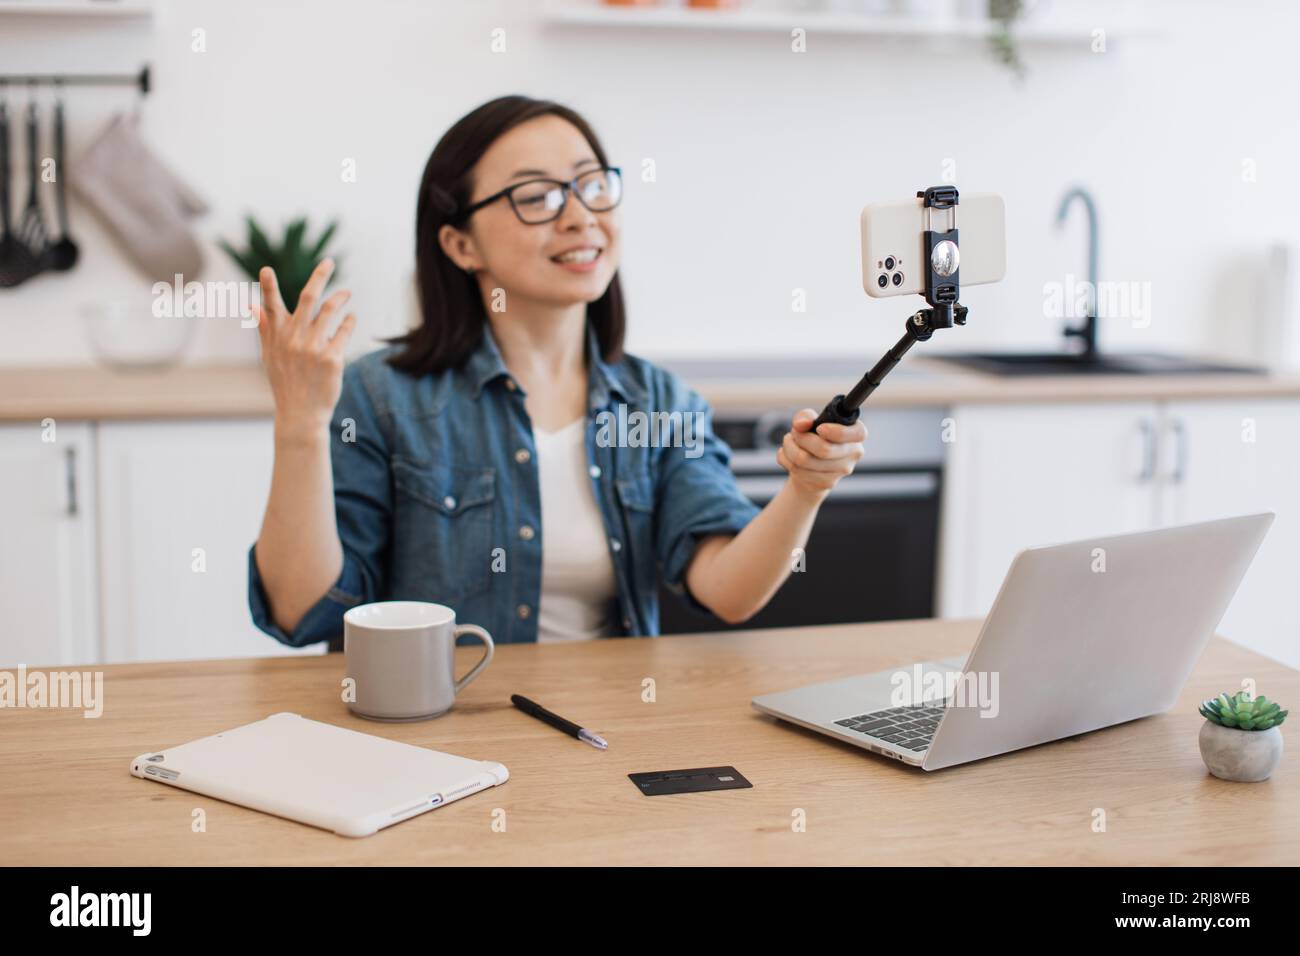 Eine energiegeladene Frau, die sich auf einem Selfie-Stick mit einem modernen Smartphone für einen persönlichen Blog filmt. Positive asiatische Frau in Brillen, die Online-Kurse aufnehmen wh Stockfoto